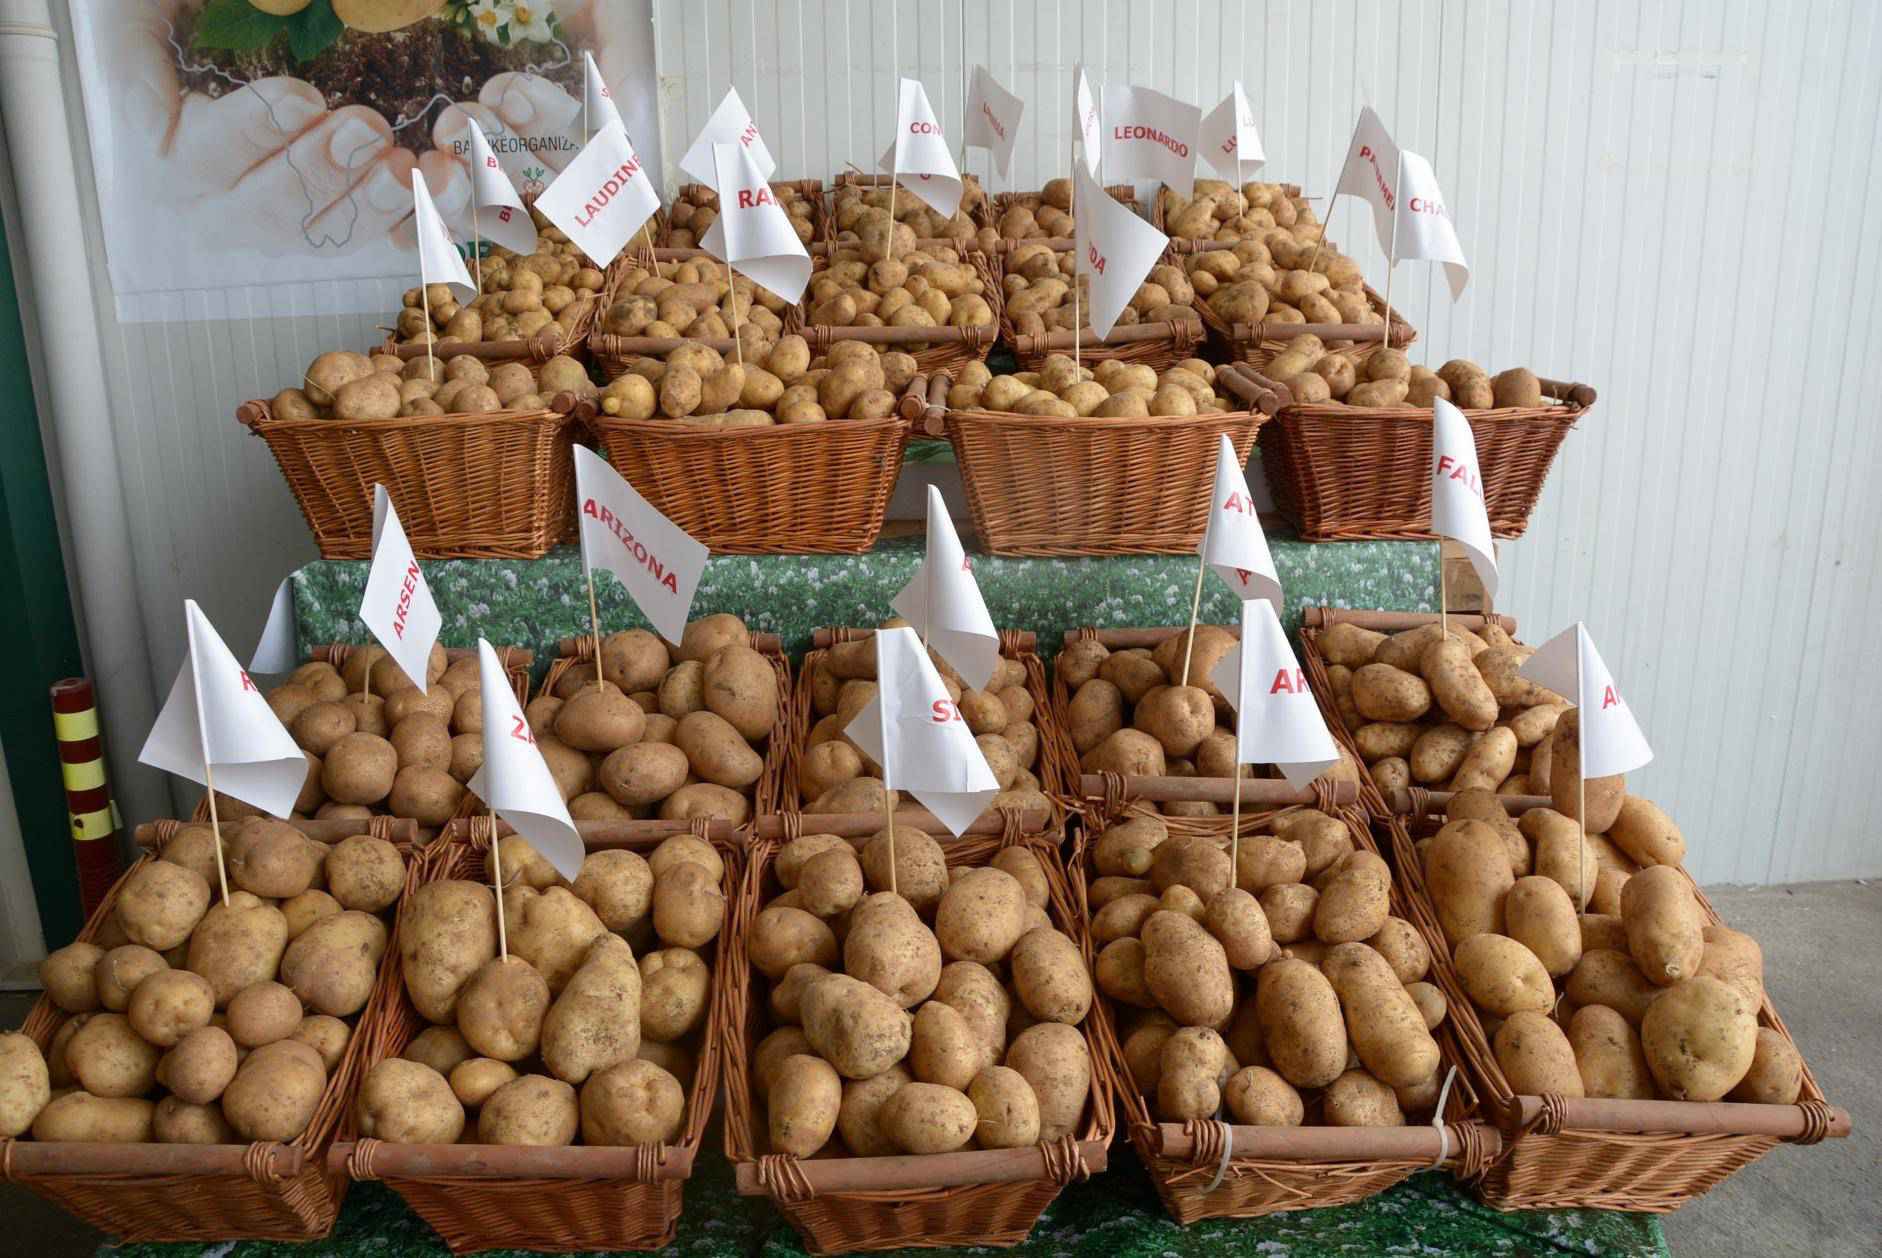 Shqipëria në vendin e 26-të në Evropë për prodhimin e patates